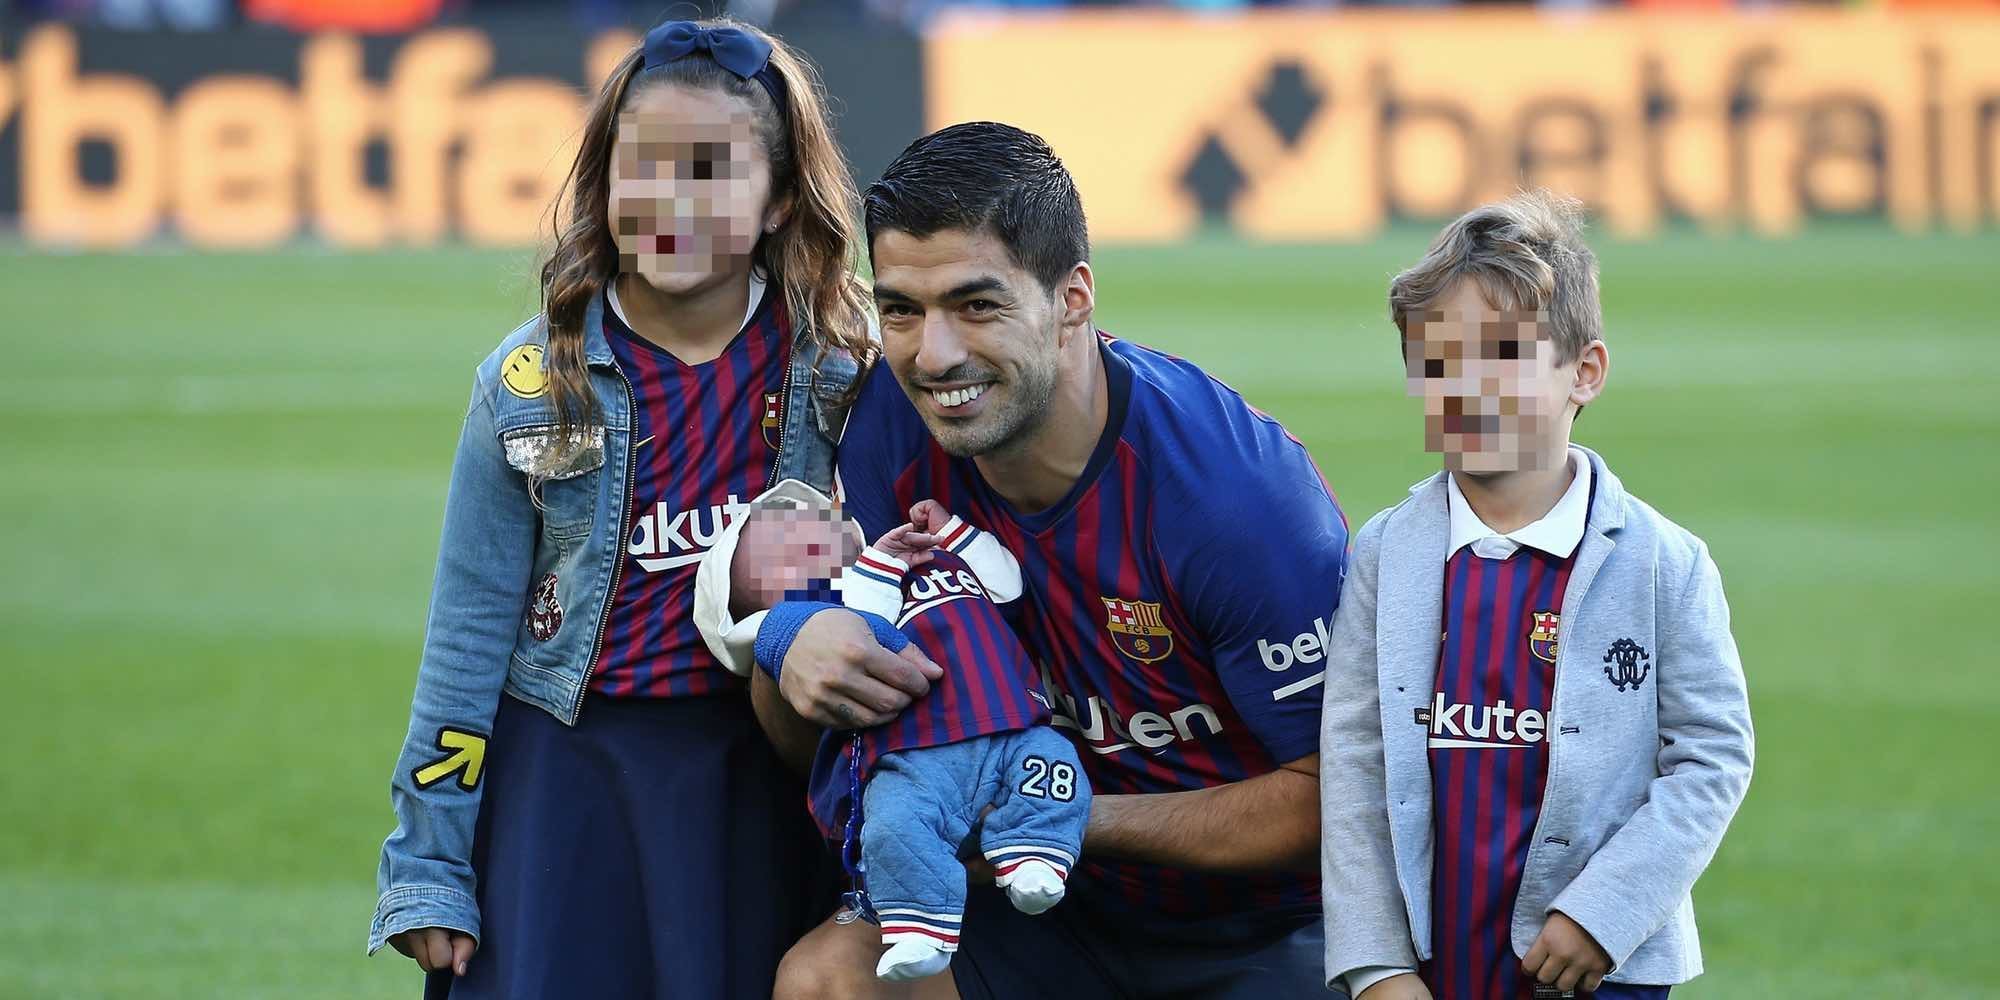 La felicidad de Luis Suárez posando por primera vez en el Camp Nou con sus tres hijos